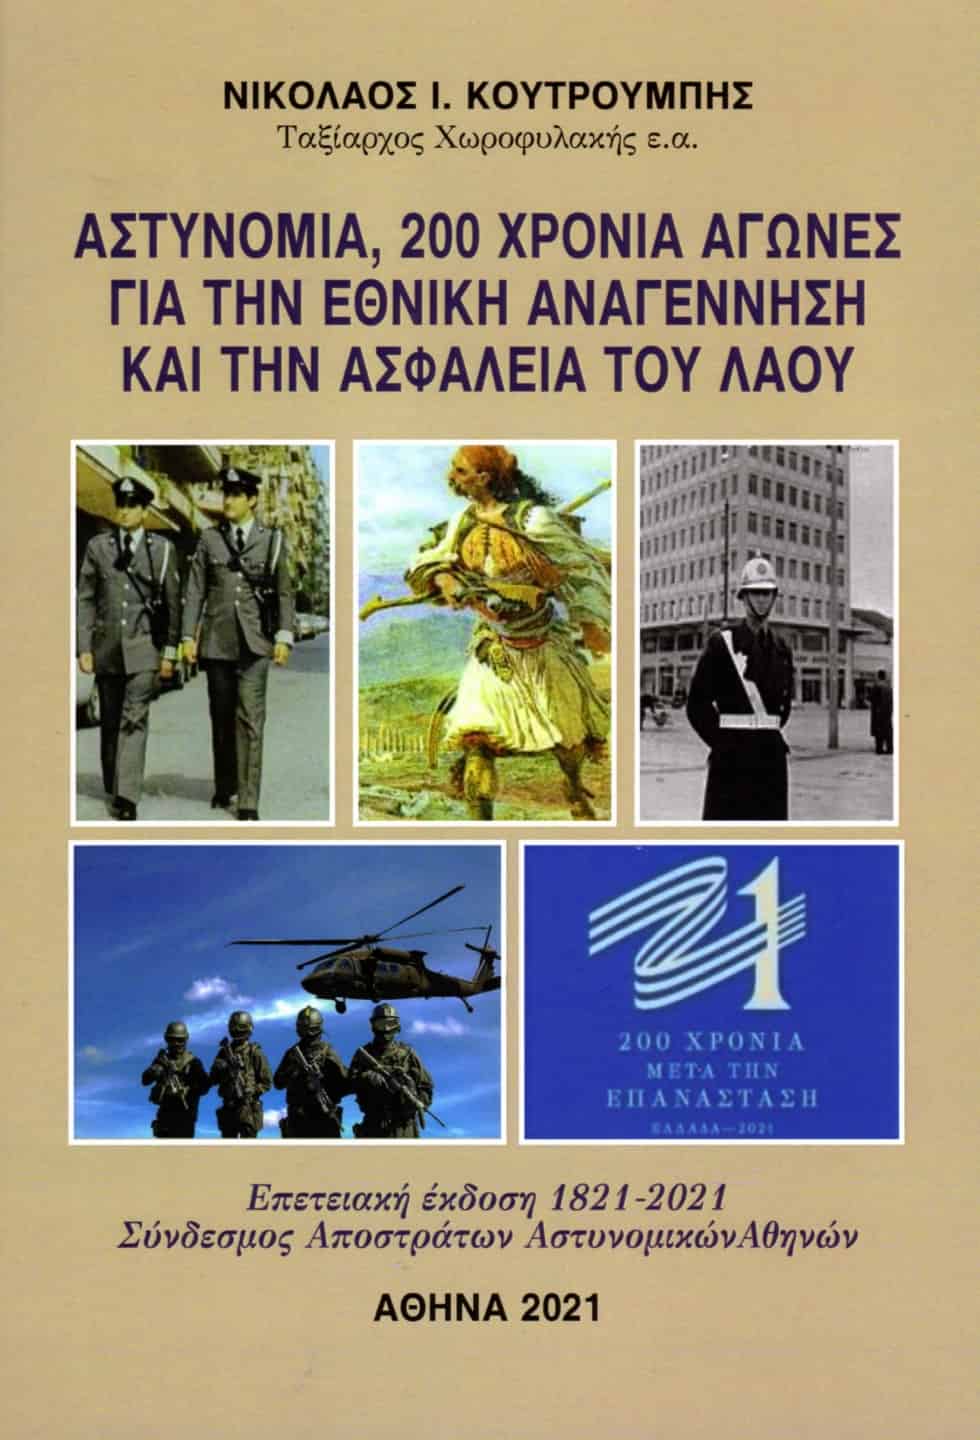 Βιβλίο  Αστυνομία 200 ΧΡΟΝΙΑ ΑΓΩΝΕΣ για την εθνική Αναγέννηση  και την Ασφάλεια του Λαού 